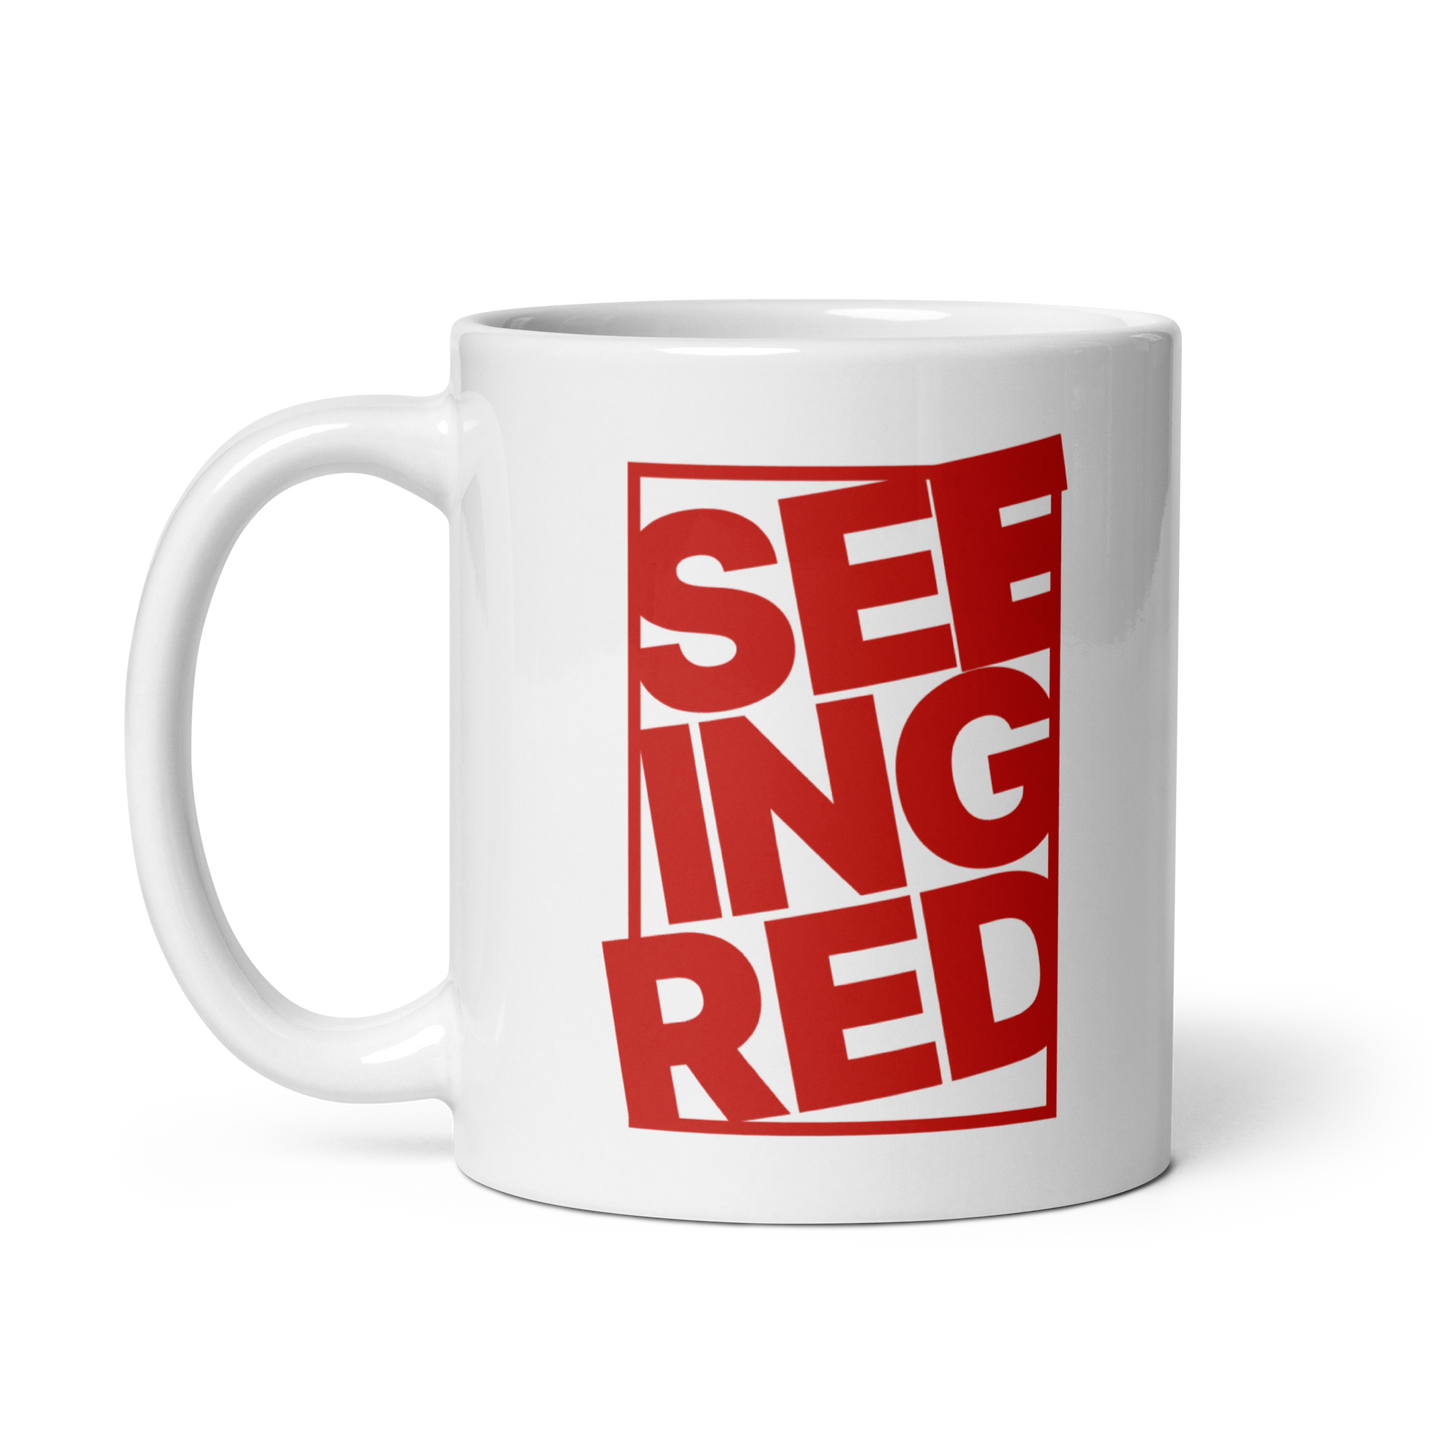 SEEING RED Mug